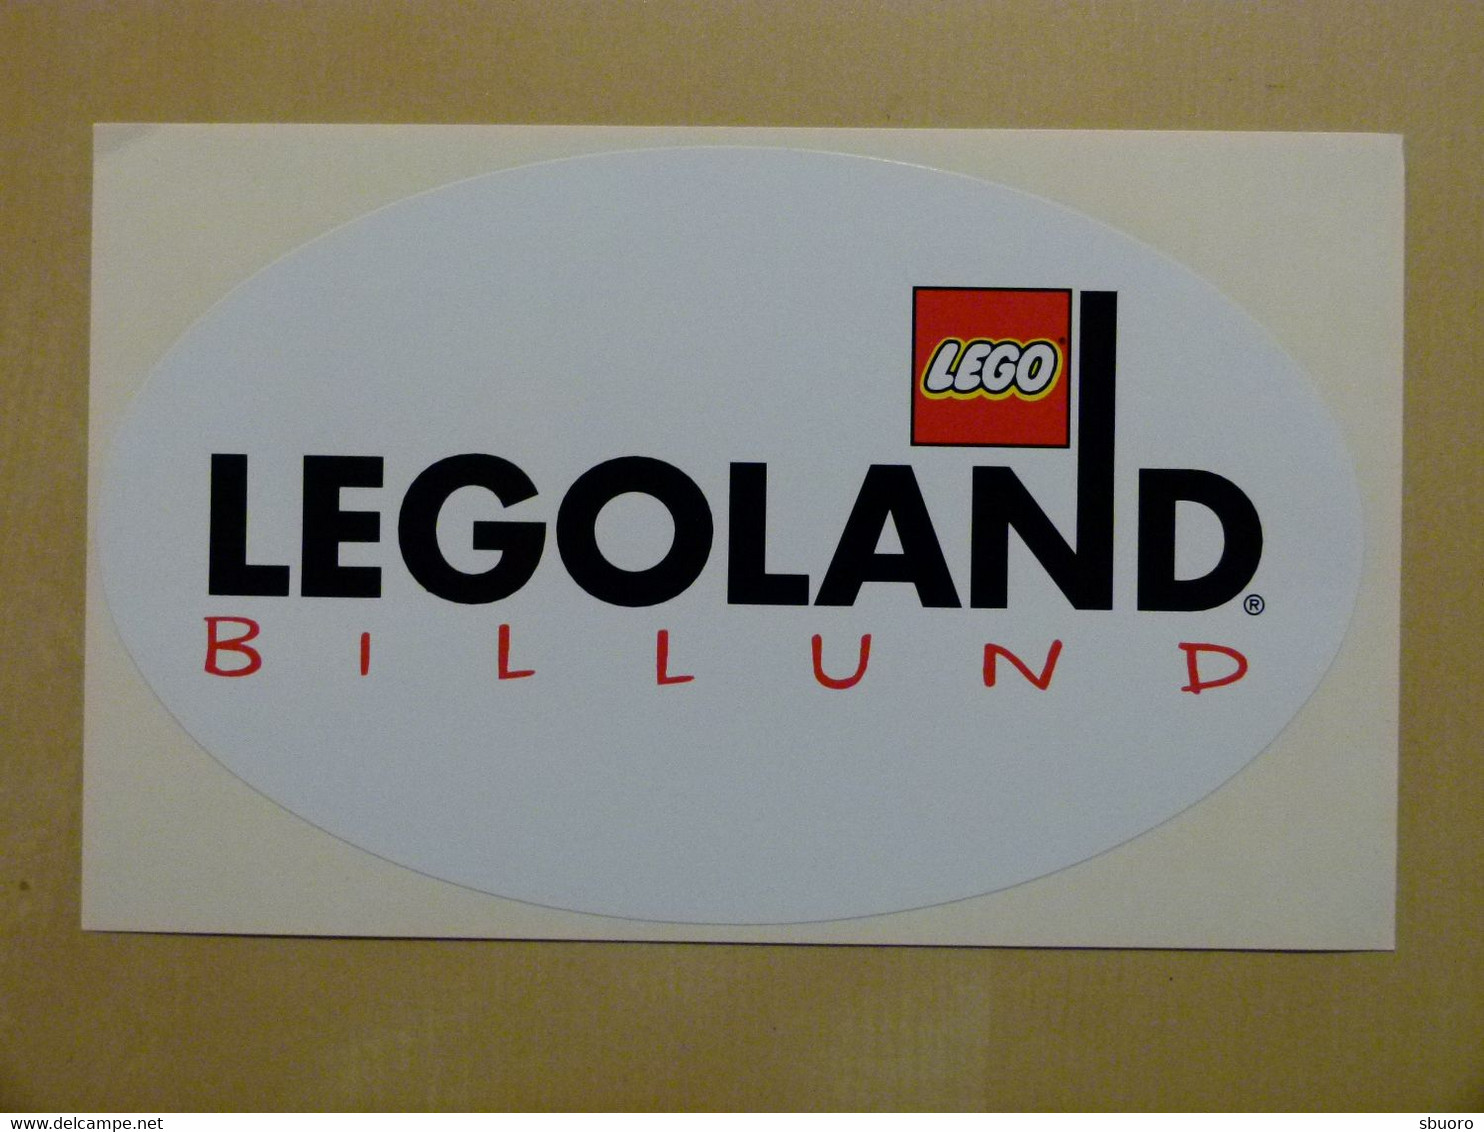 Legoland Billund Danemark Danmark Denmark. Autocollant Sticker Ovale De Plus Grandes Dimensions 14 Cm X 8,5 Cm - Non Classificati